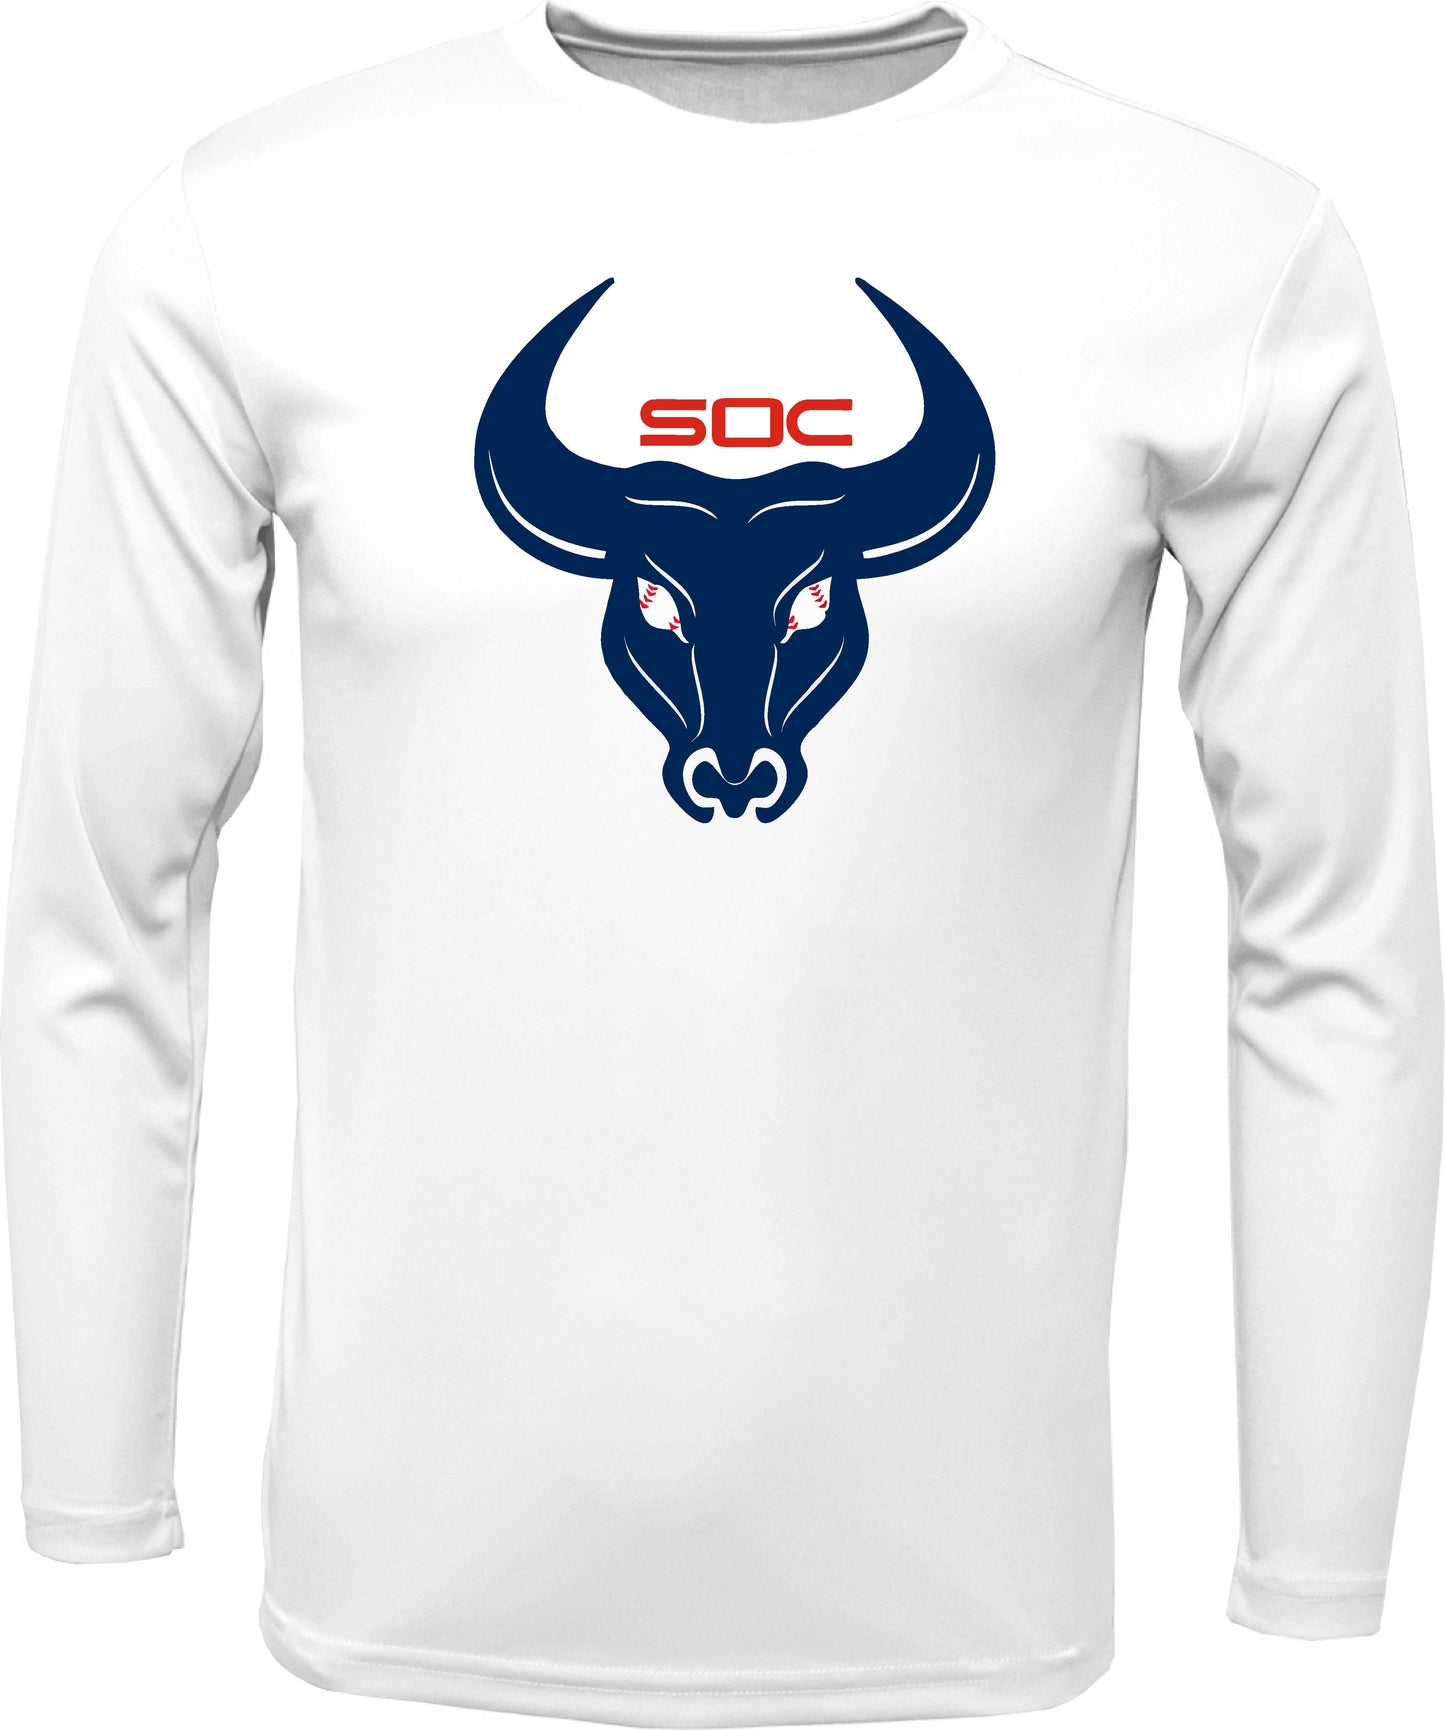 SC Long-sleeve "Bull logo" Dri-fit T-shirt